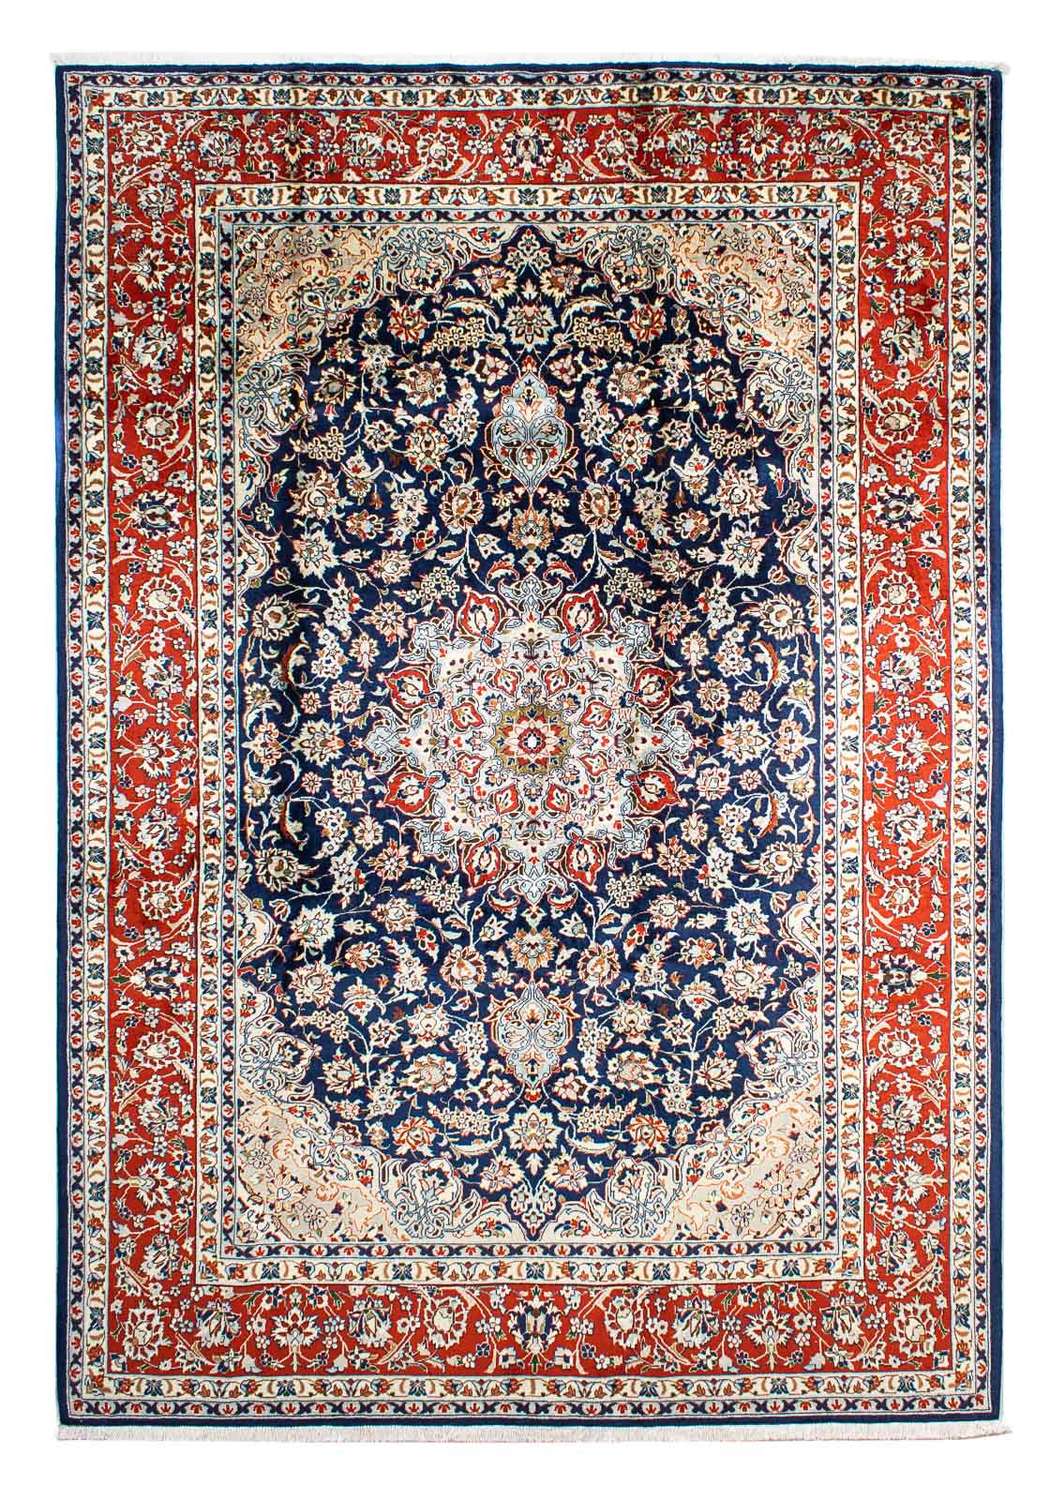 Tapis persan - Classique - 302 x 214 cm - bleu foncé